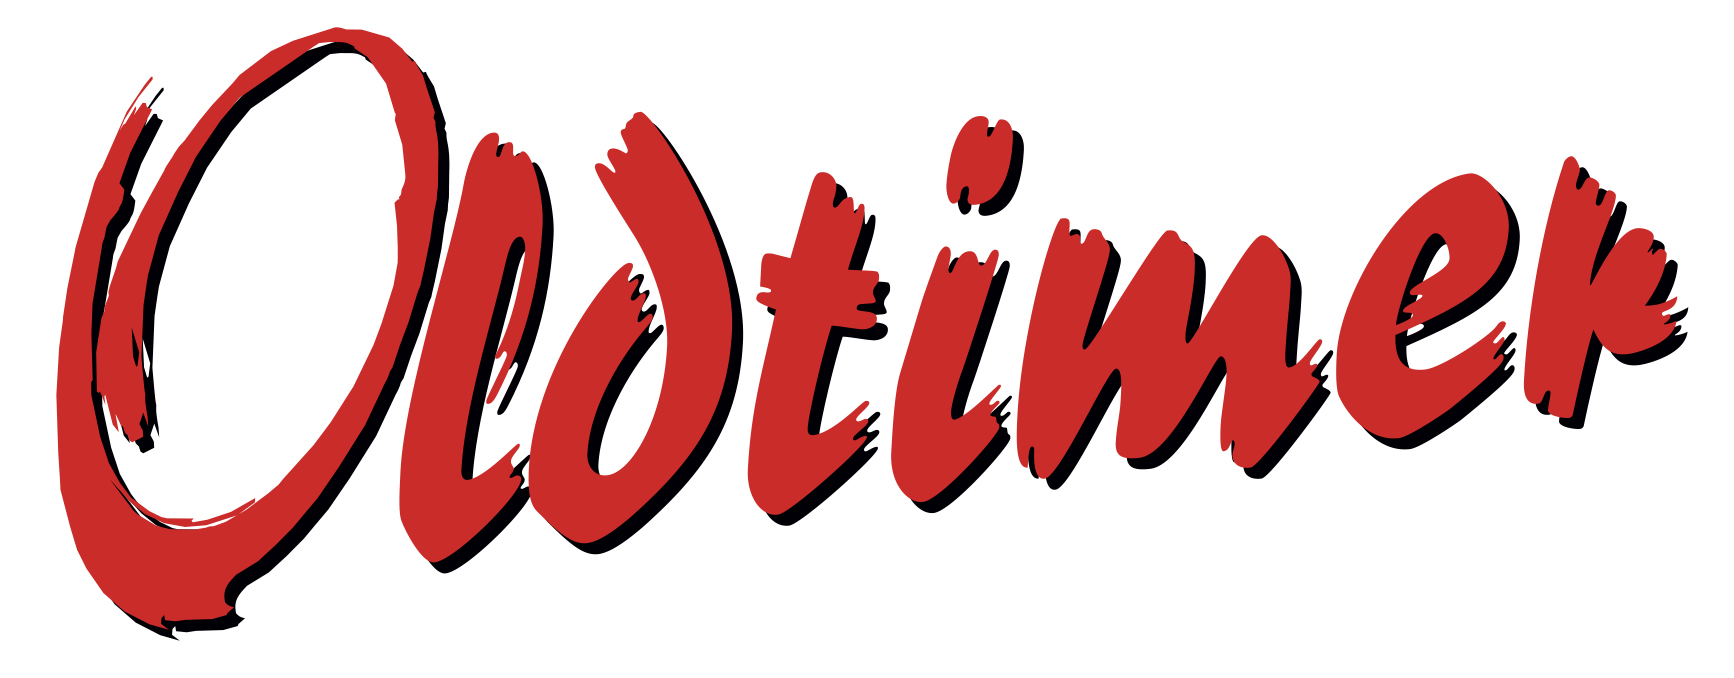 Oldtimer_Logo_2017.jpg